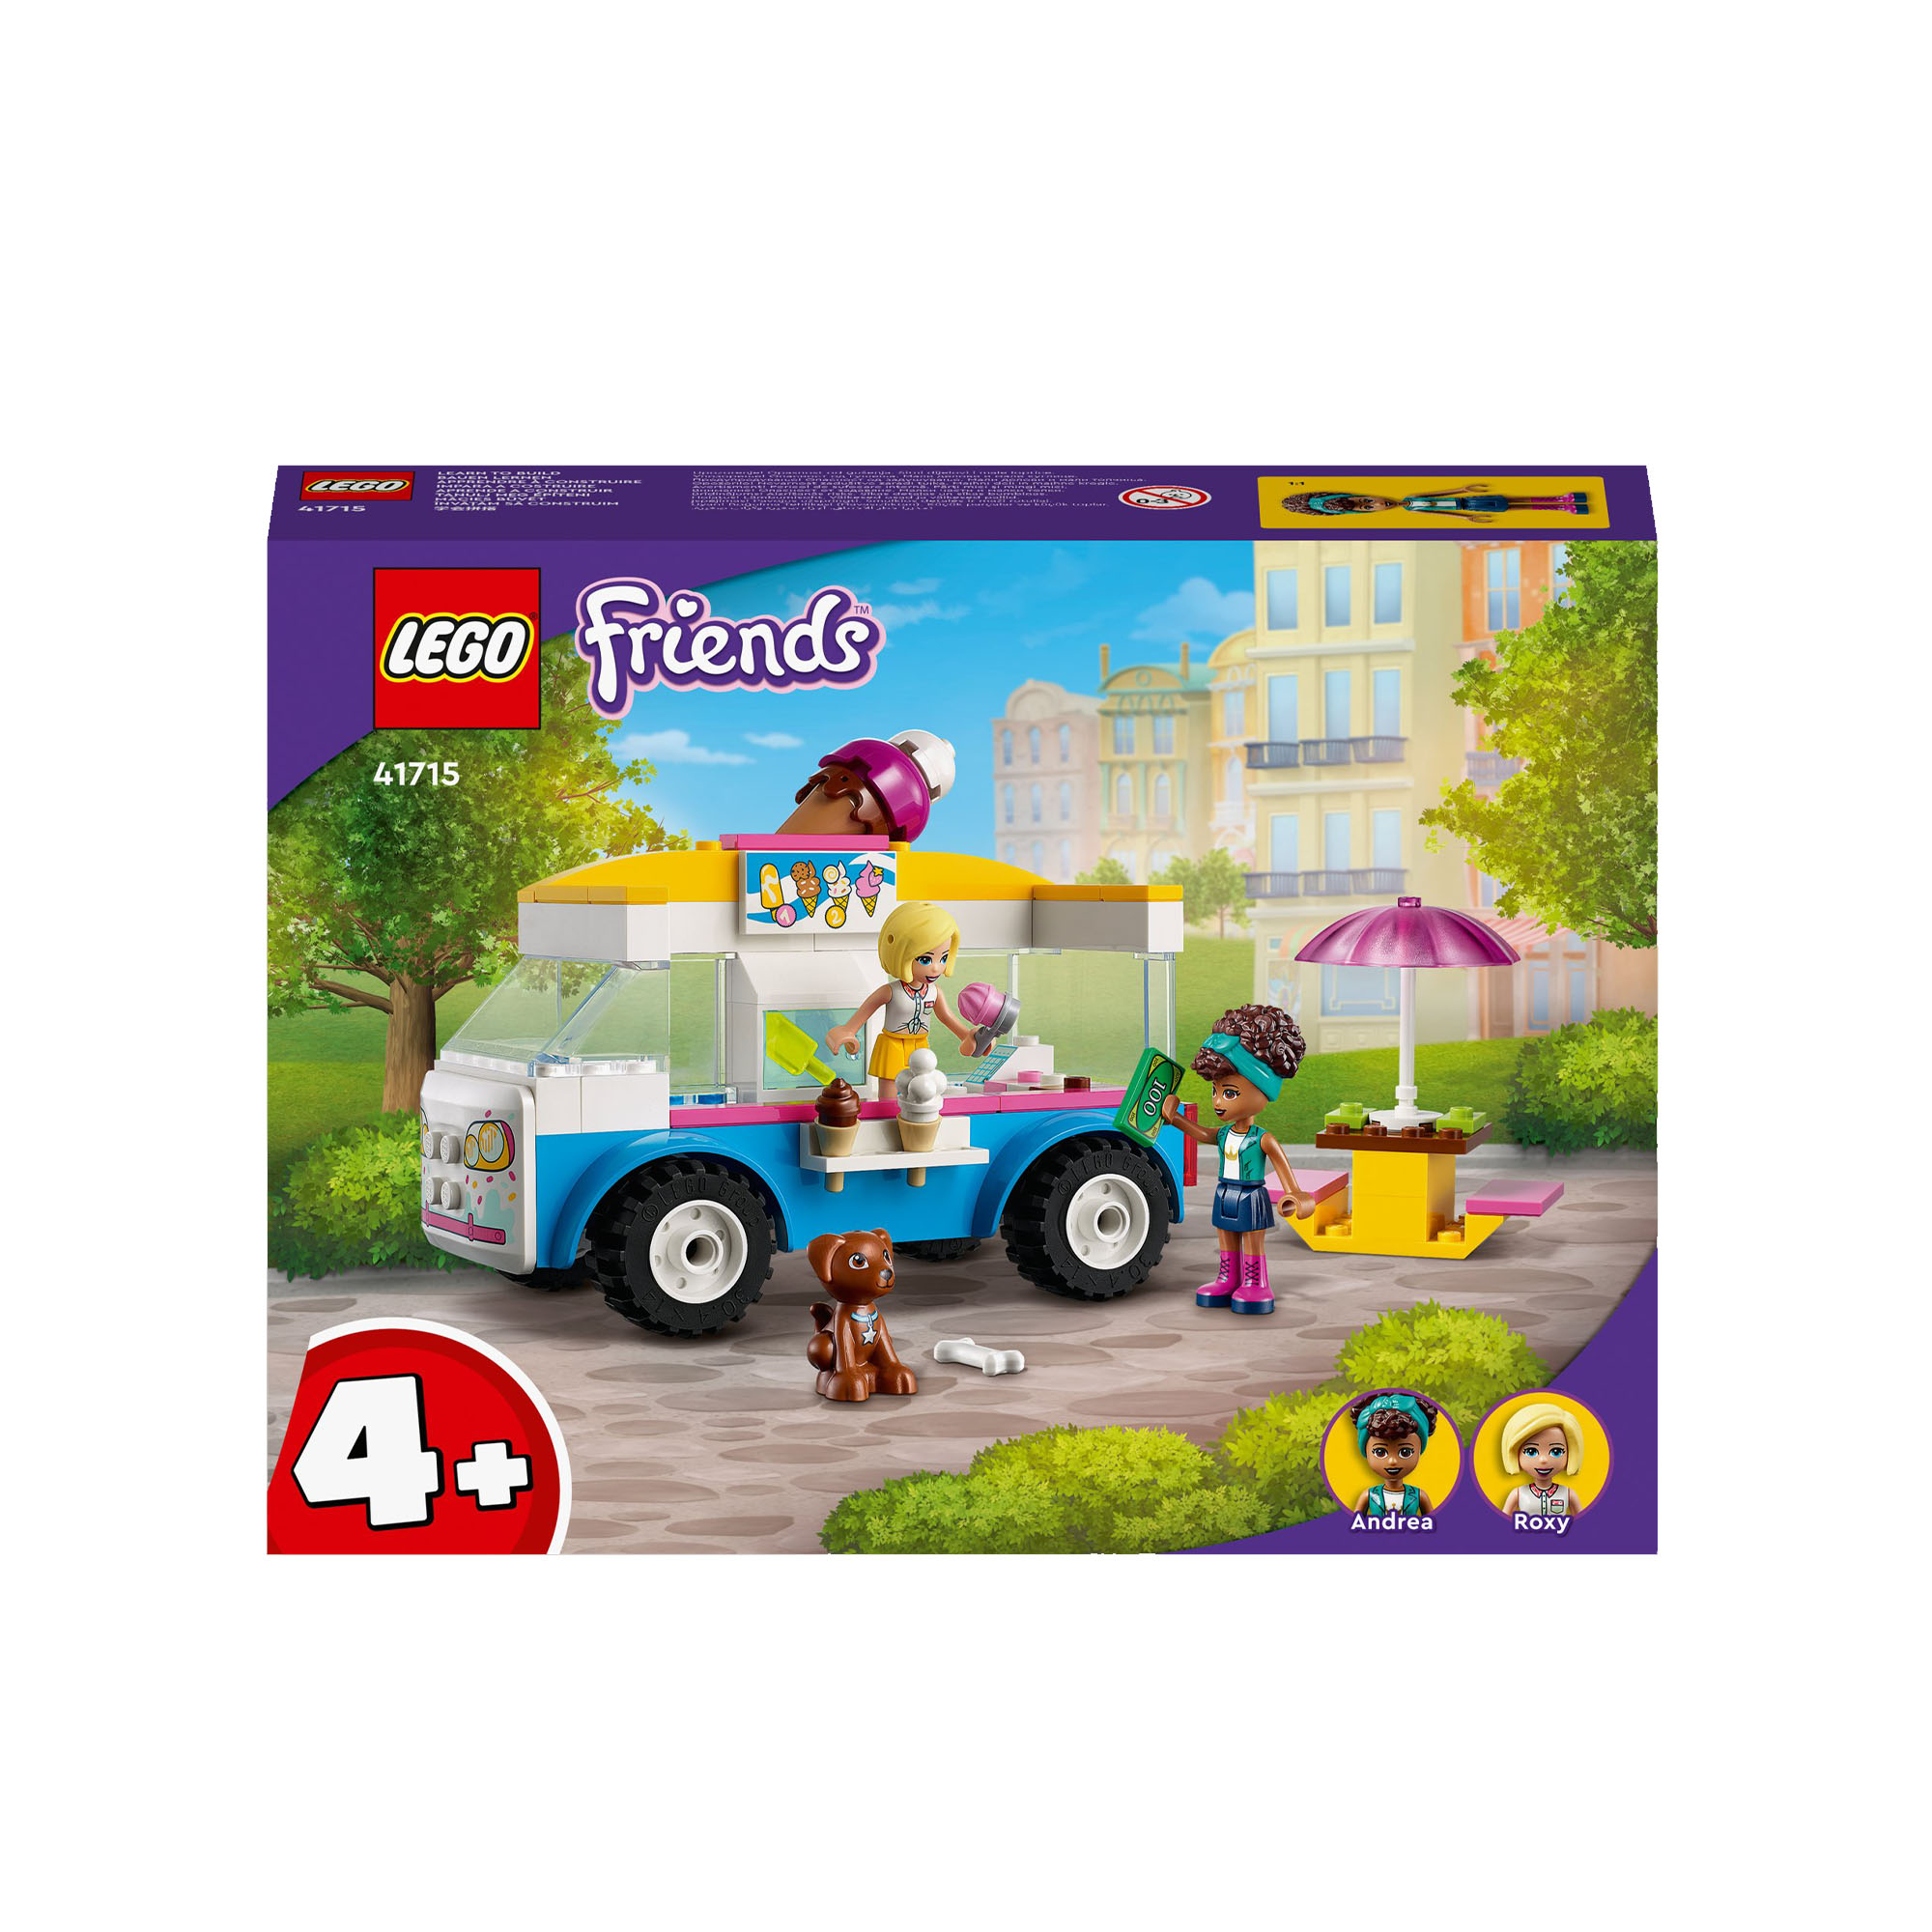 LEGO Friends Il Furgone dei Gelati, Set con Gelato, Cibo e Cane Giocattolo, con 41715, , large